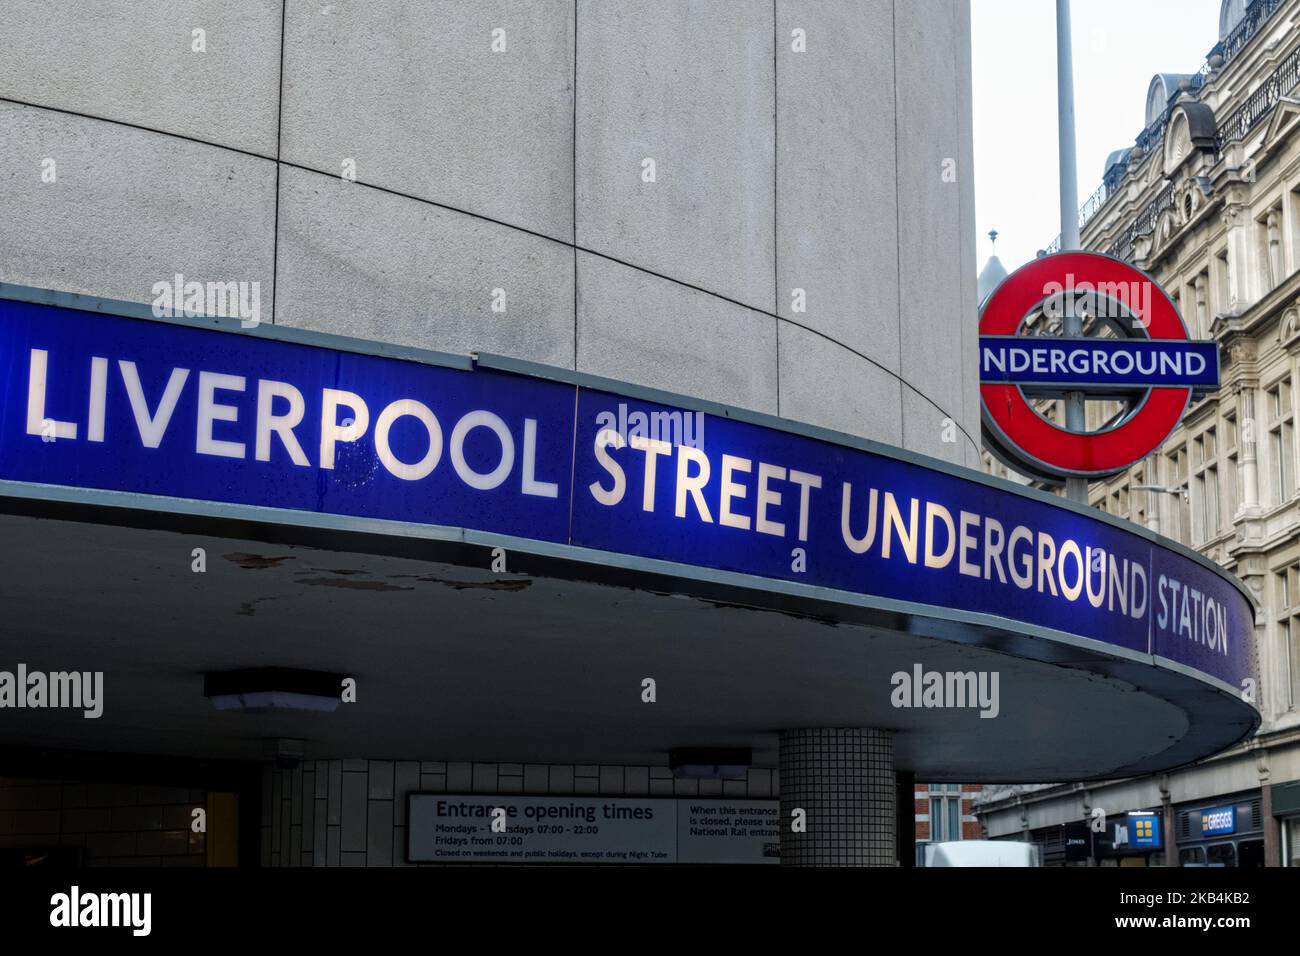 Entrée au métro de Liverpool Street, panneau circulaire de la station de métro Londres Angleterre Royaume-Uni Banque D'Images